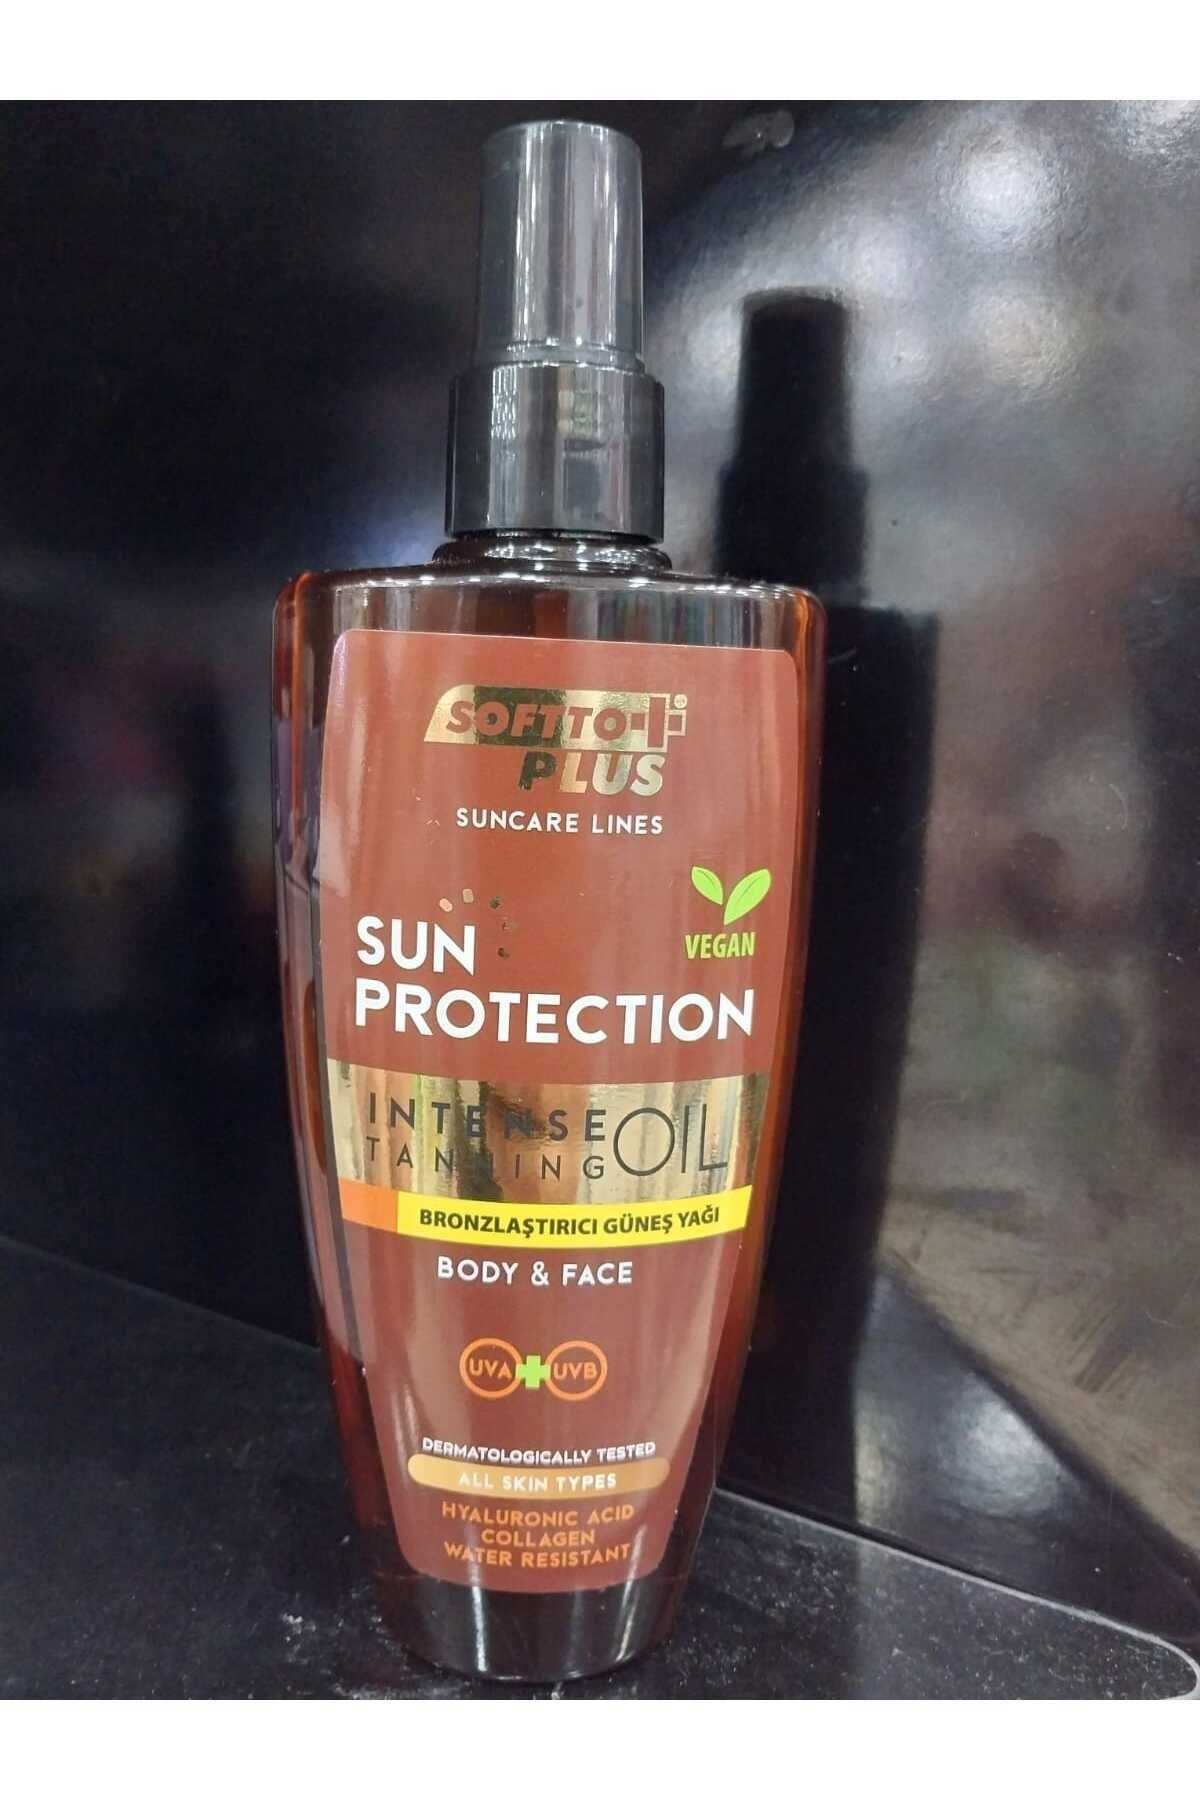 Softto Plus Sun Protectıon Intense Body & Face Tanning Bronzlaştırıcı Vegan Güneş Yagı 200 ML.